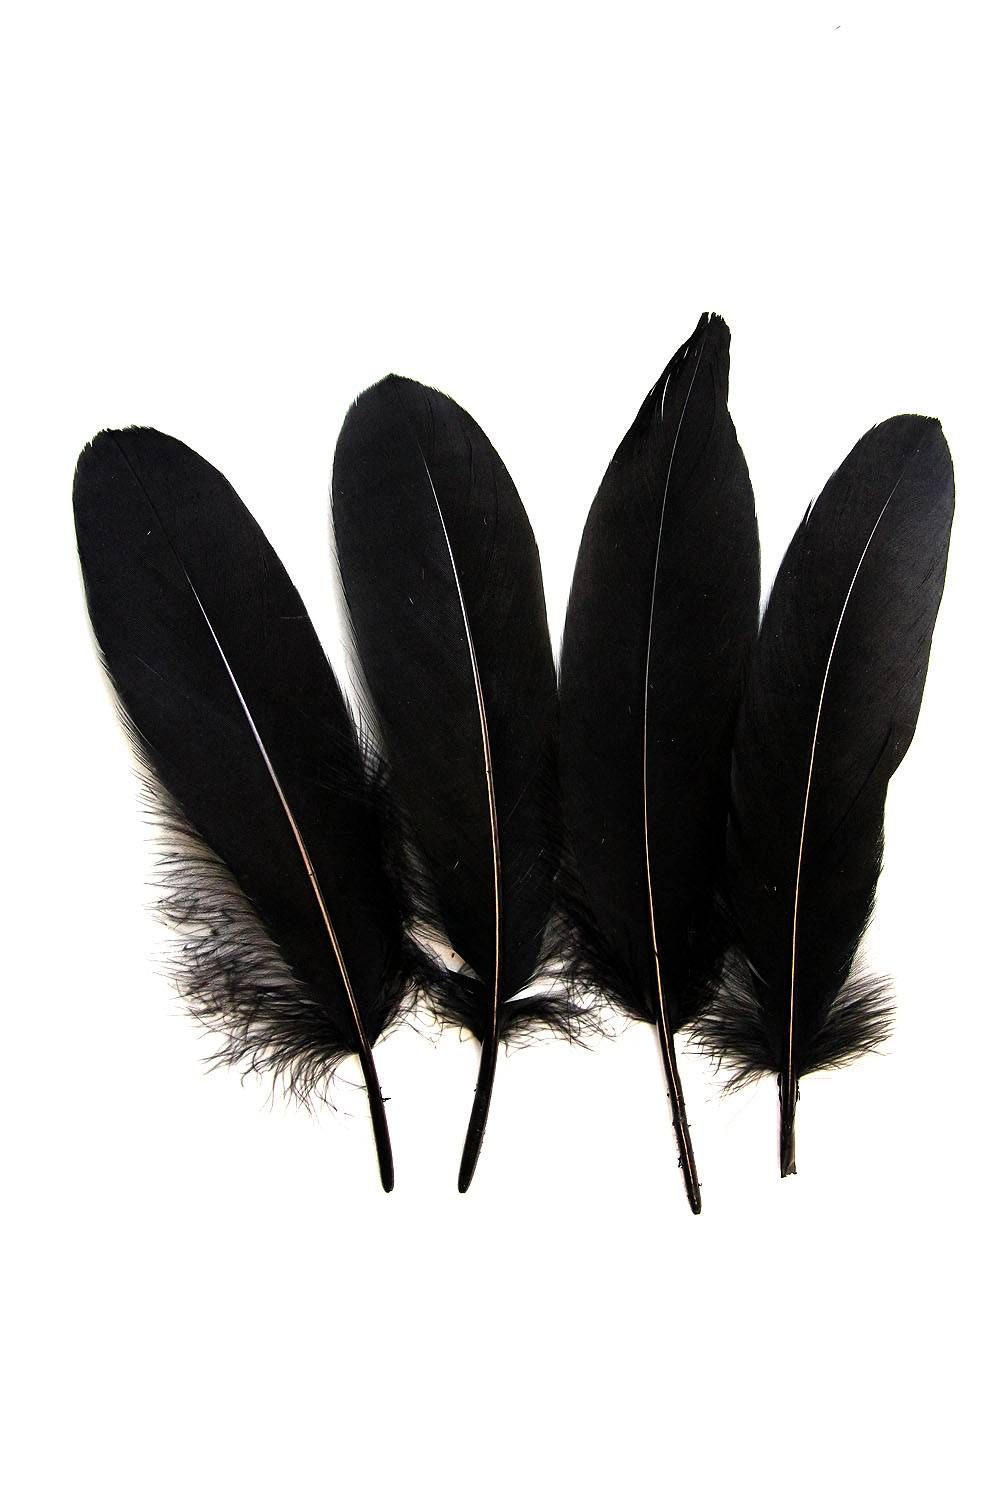 Goose Nageoires ca. 20cm black 10g Pack